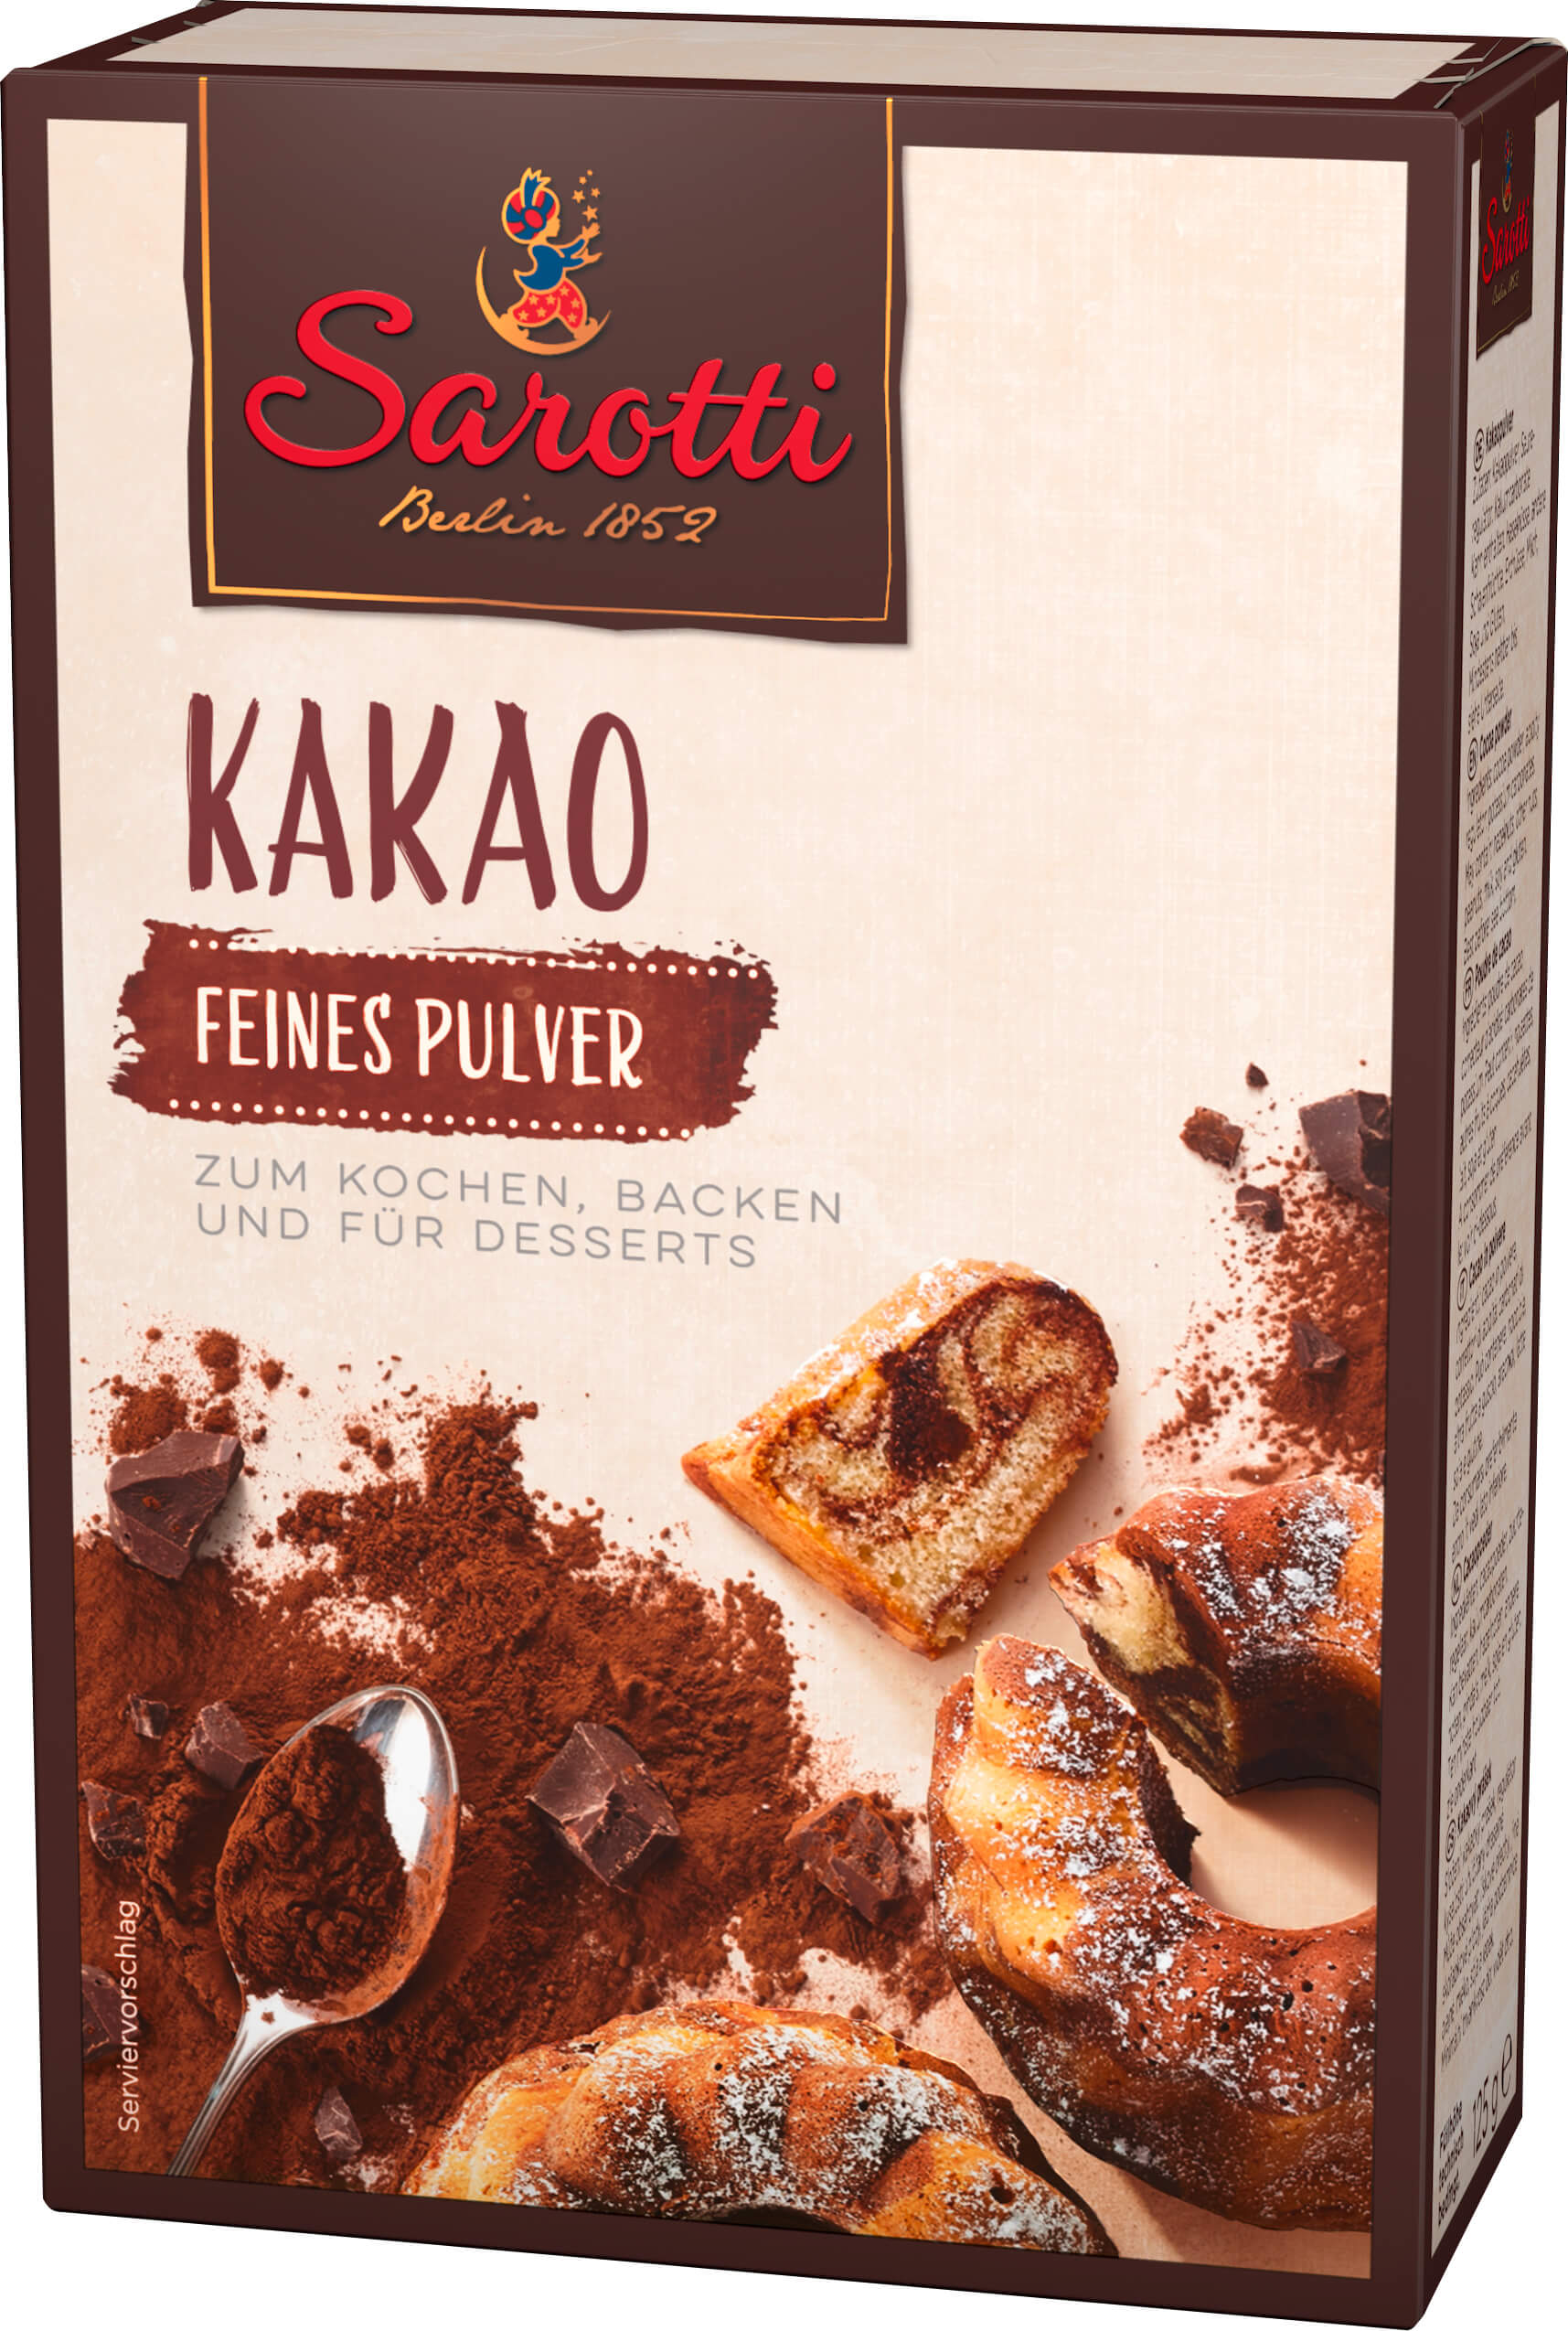 Sarotti Kakao Feines Pulver 125g